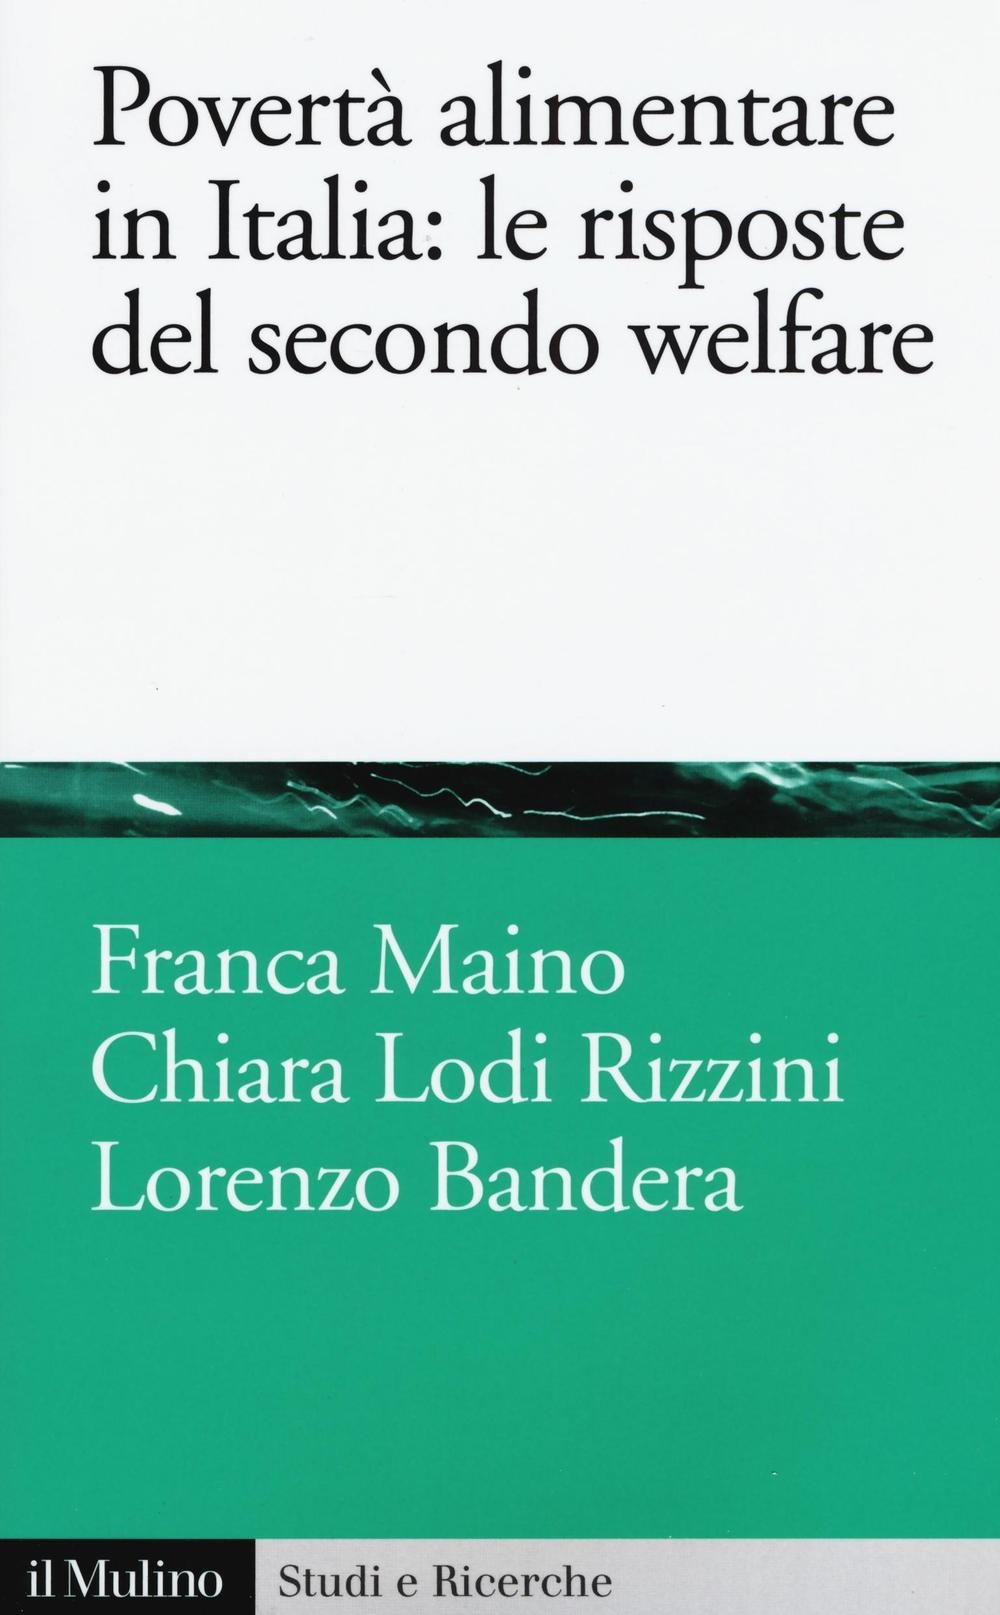 Image of Povertà alimentare in Italia: le risposte del secondo welfare